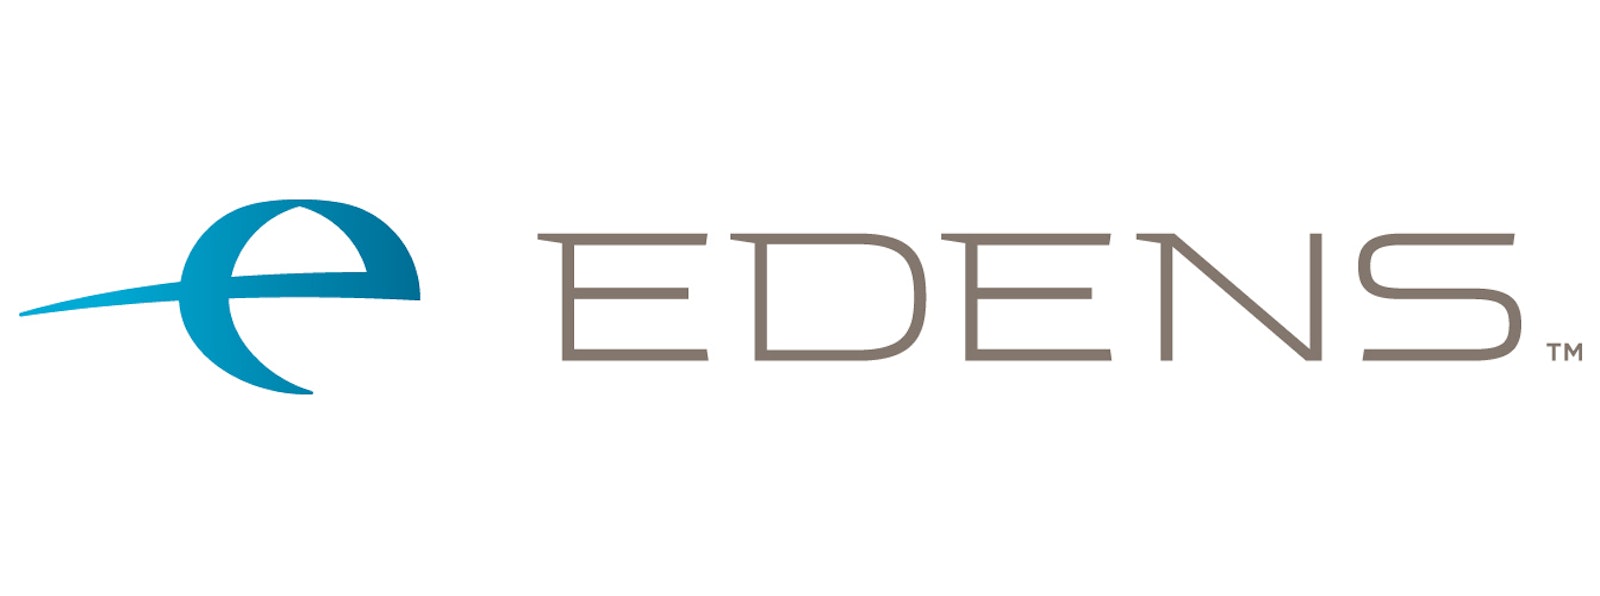 Edins Camp2 logo main